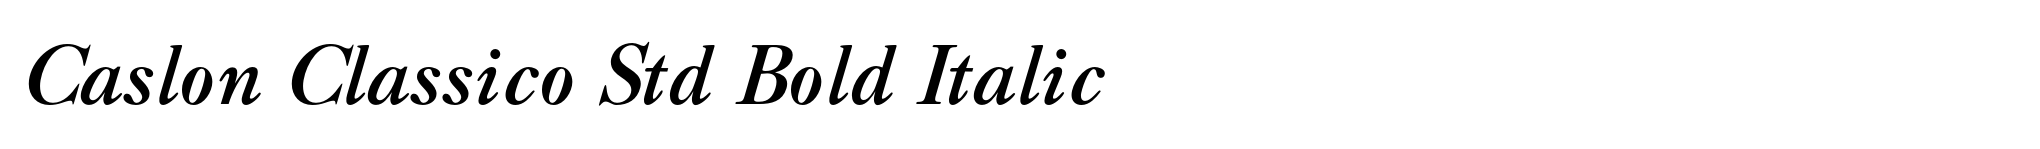 Caslon Classico Std Bold Italic image